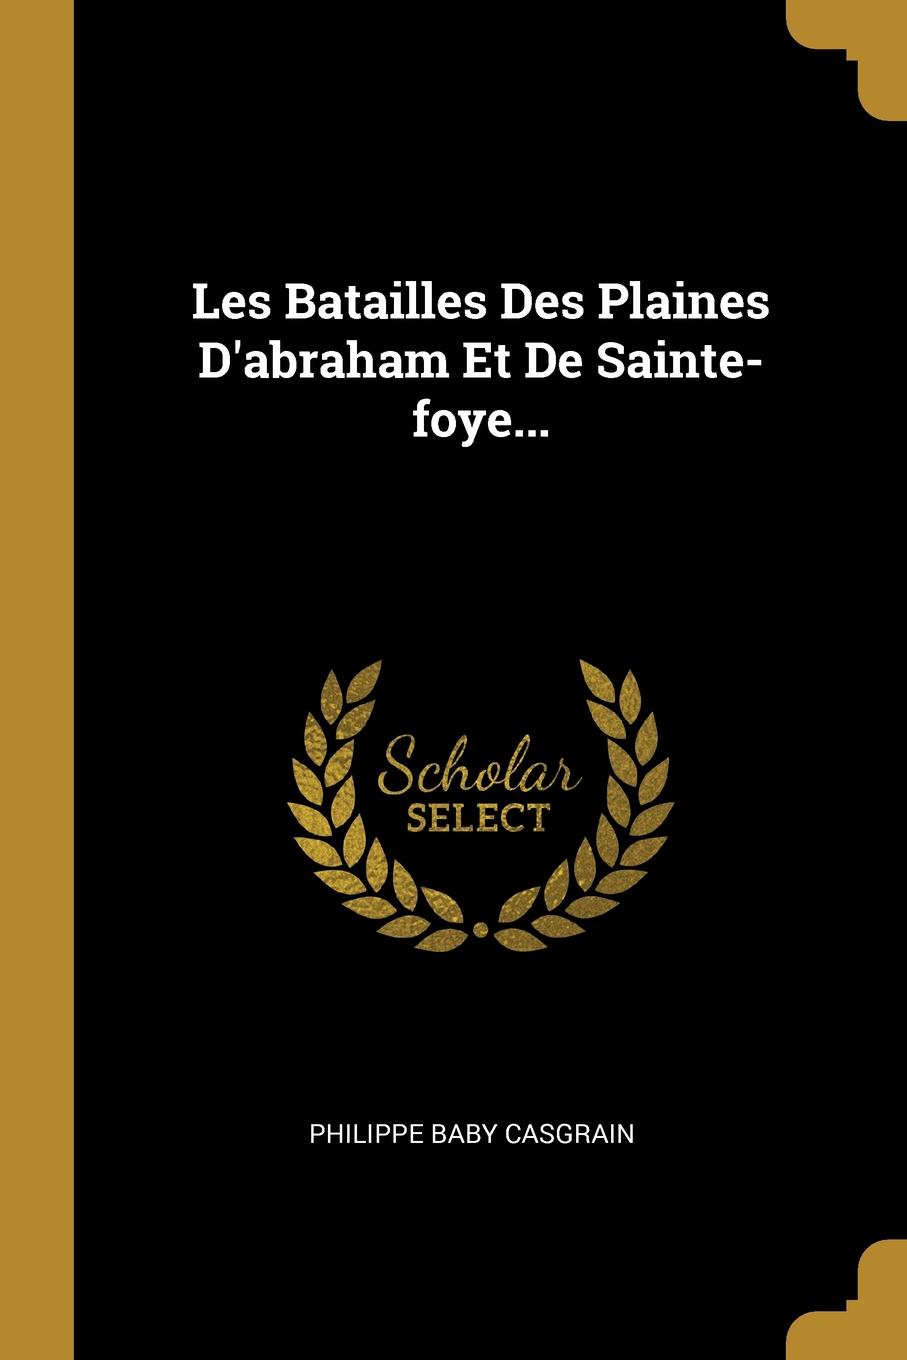 Les Batailles Des Plaines D.abraham Et De Sainte-foye...